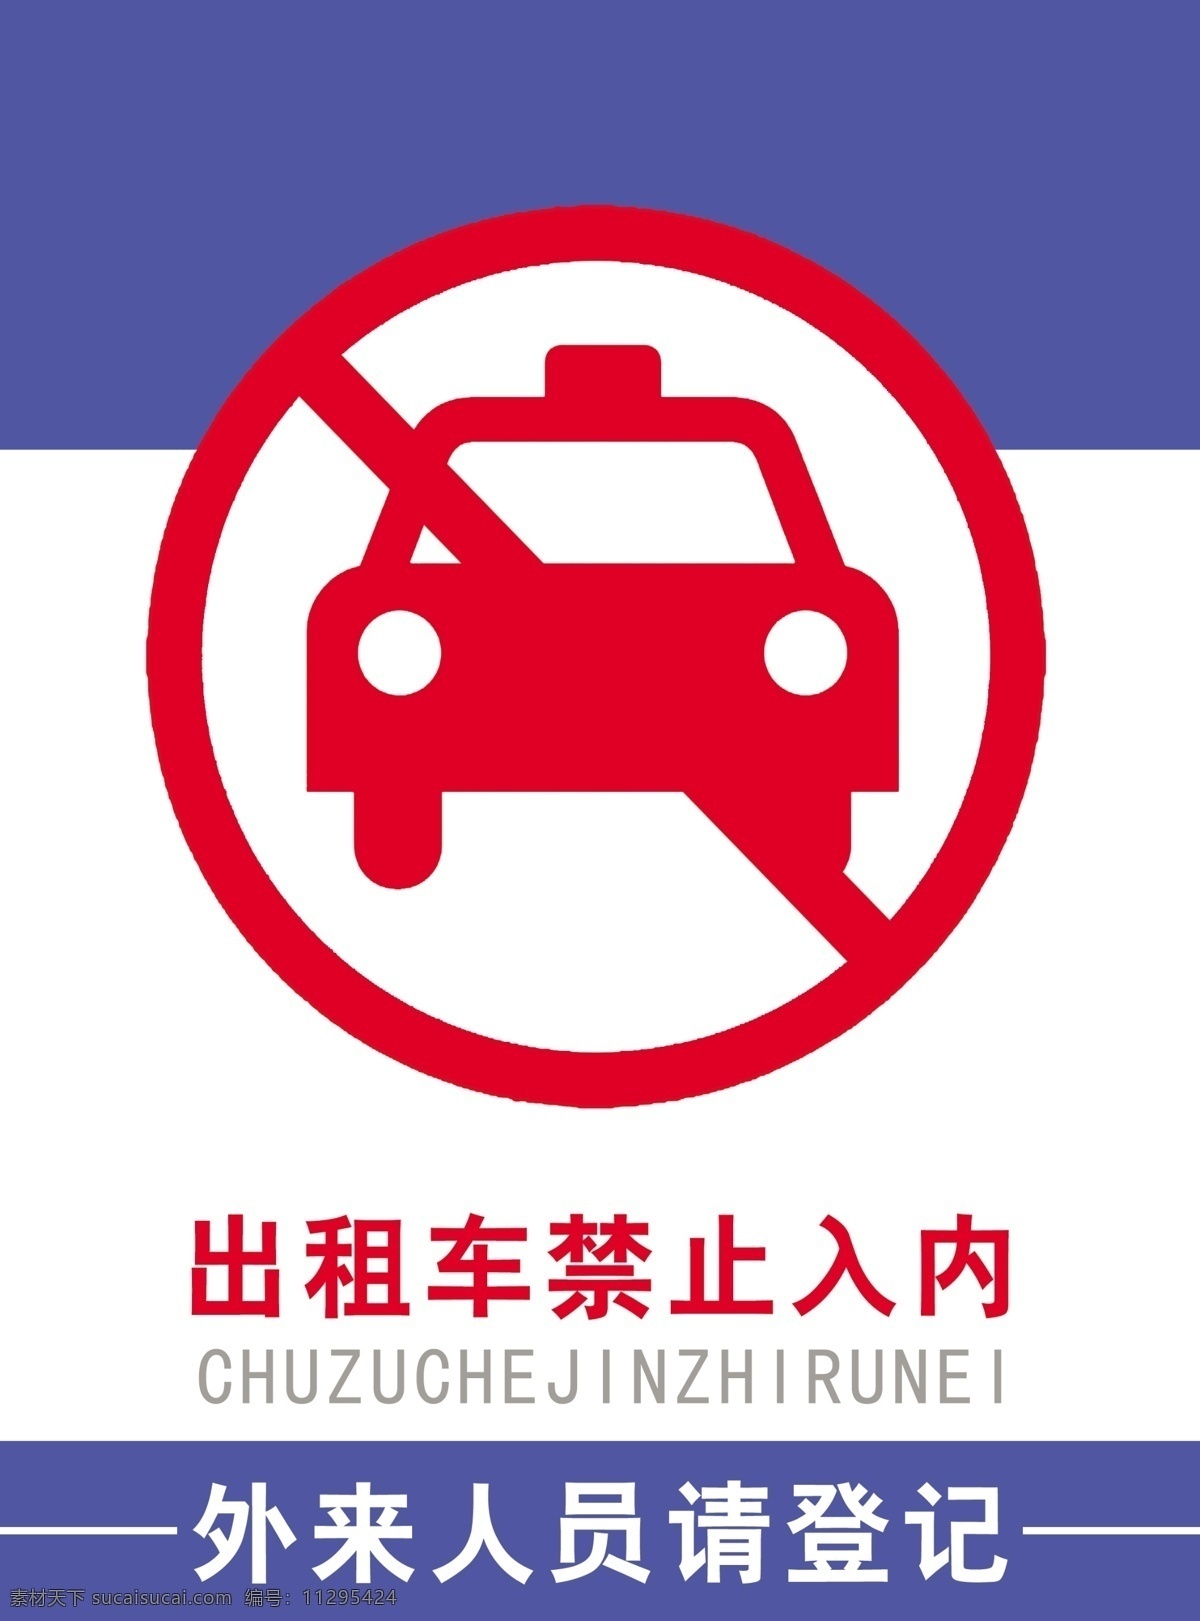 出租车 禁止 入 内 出租车标志 广告设计模板 其他模版 静静 39 s 源文件库